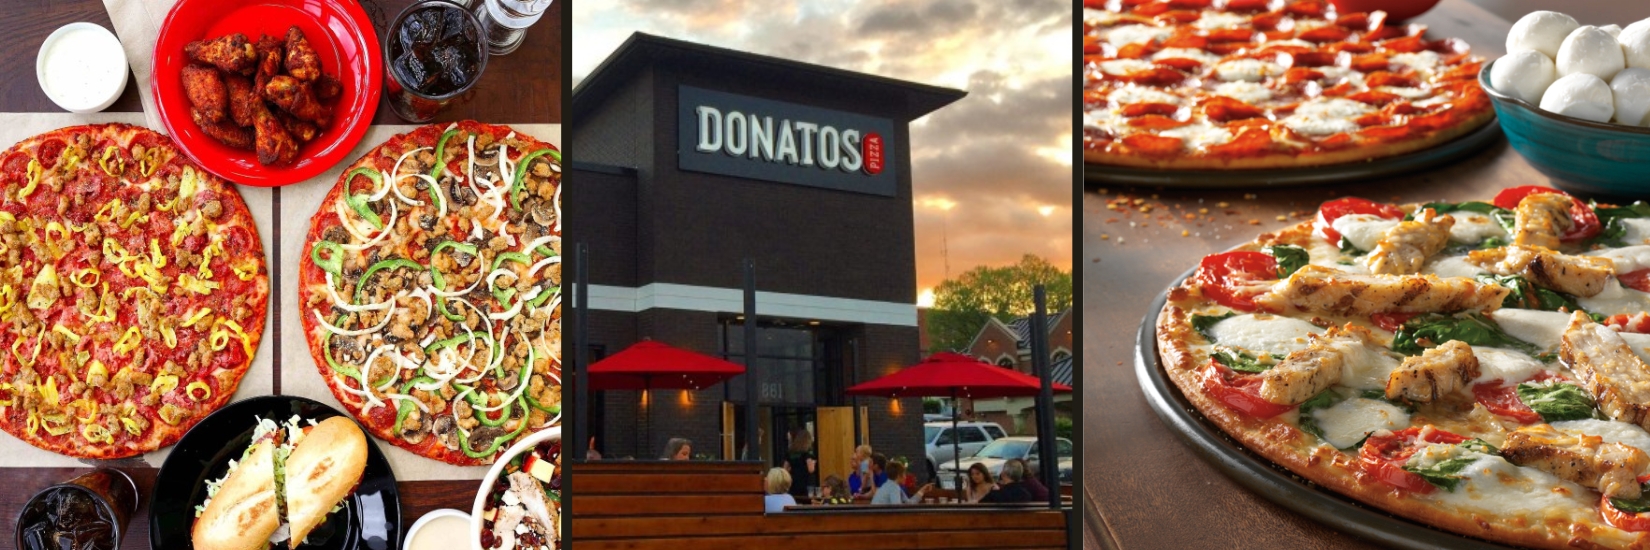 Donatos Pizza cuisine and location exterior